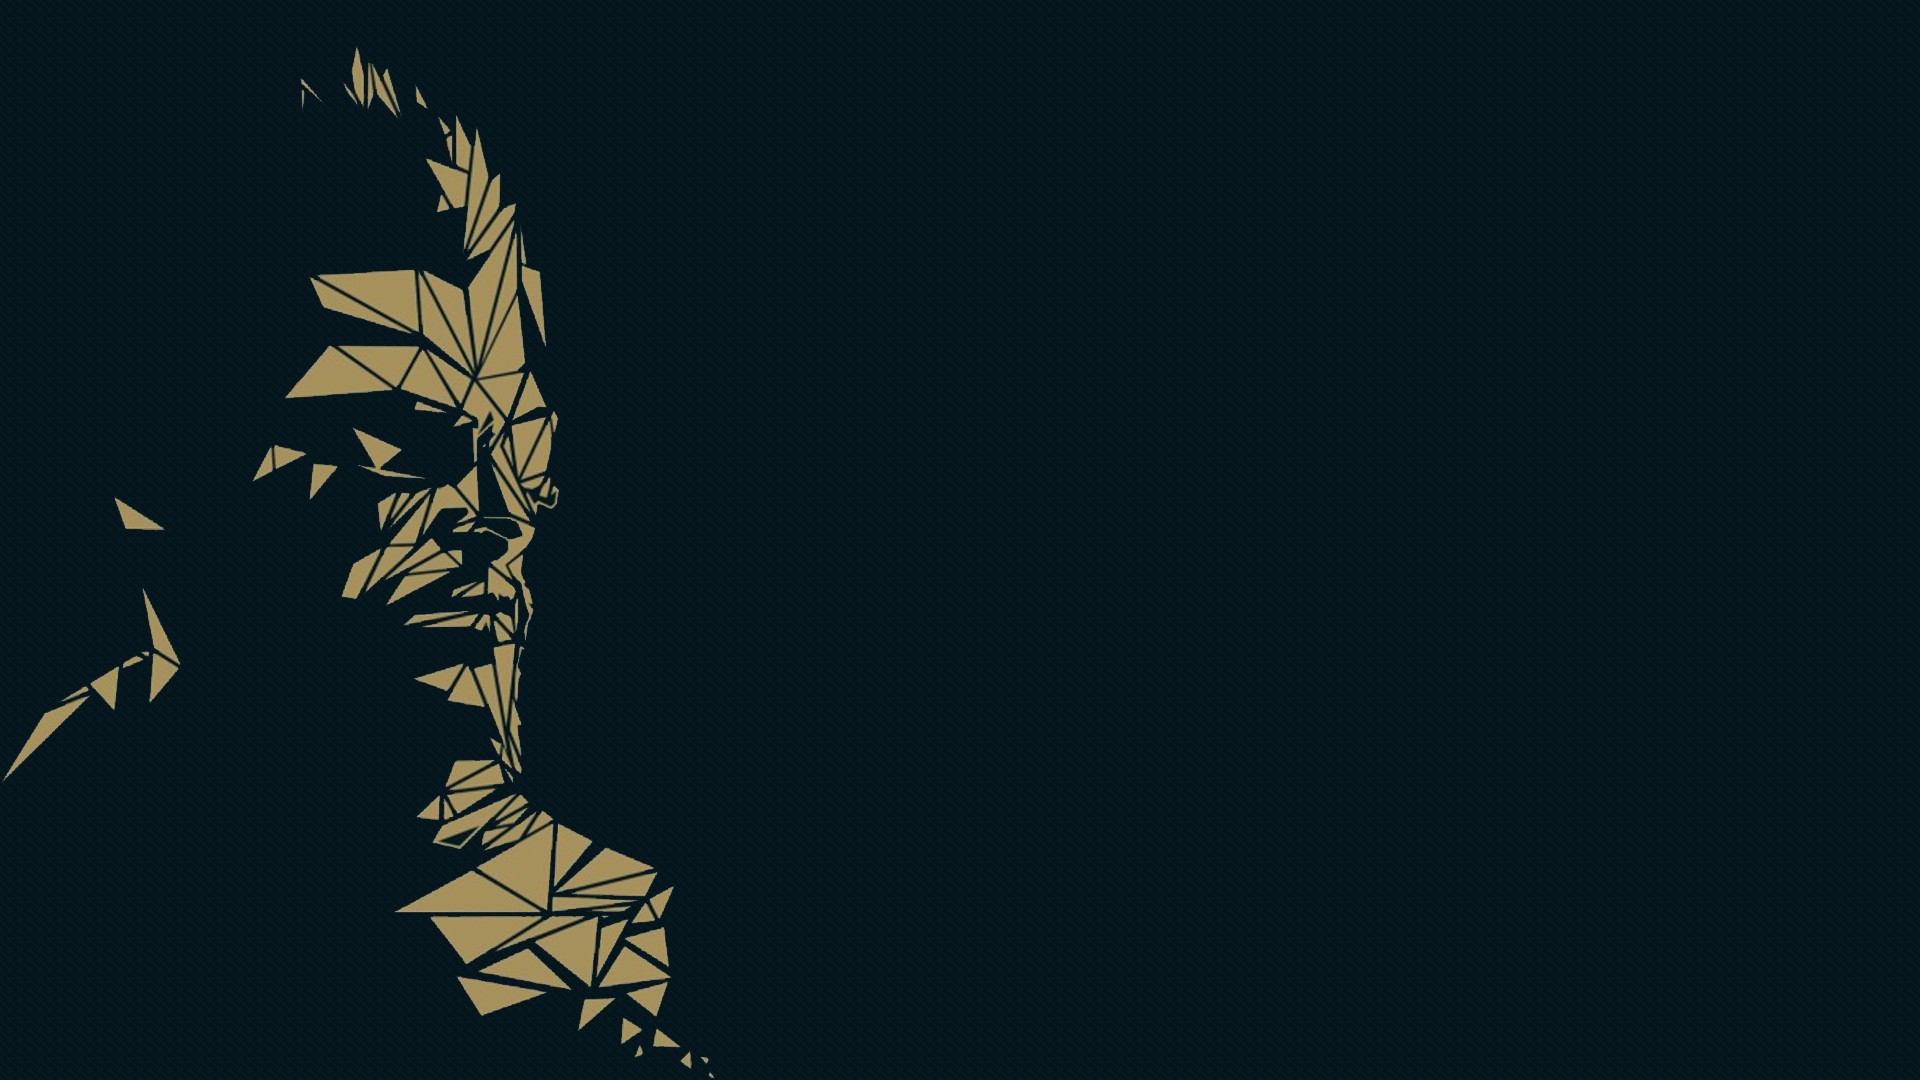 Deus Ex , HD Wallpaper & Backgrounds